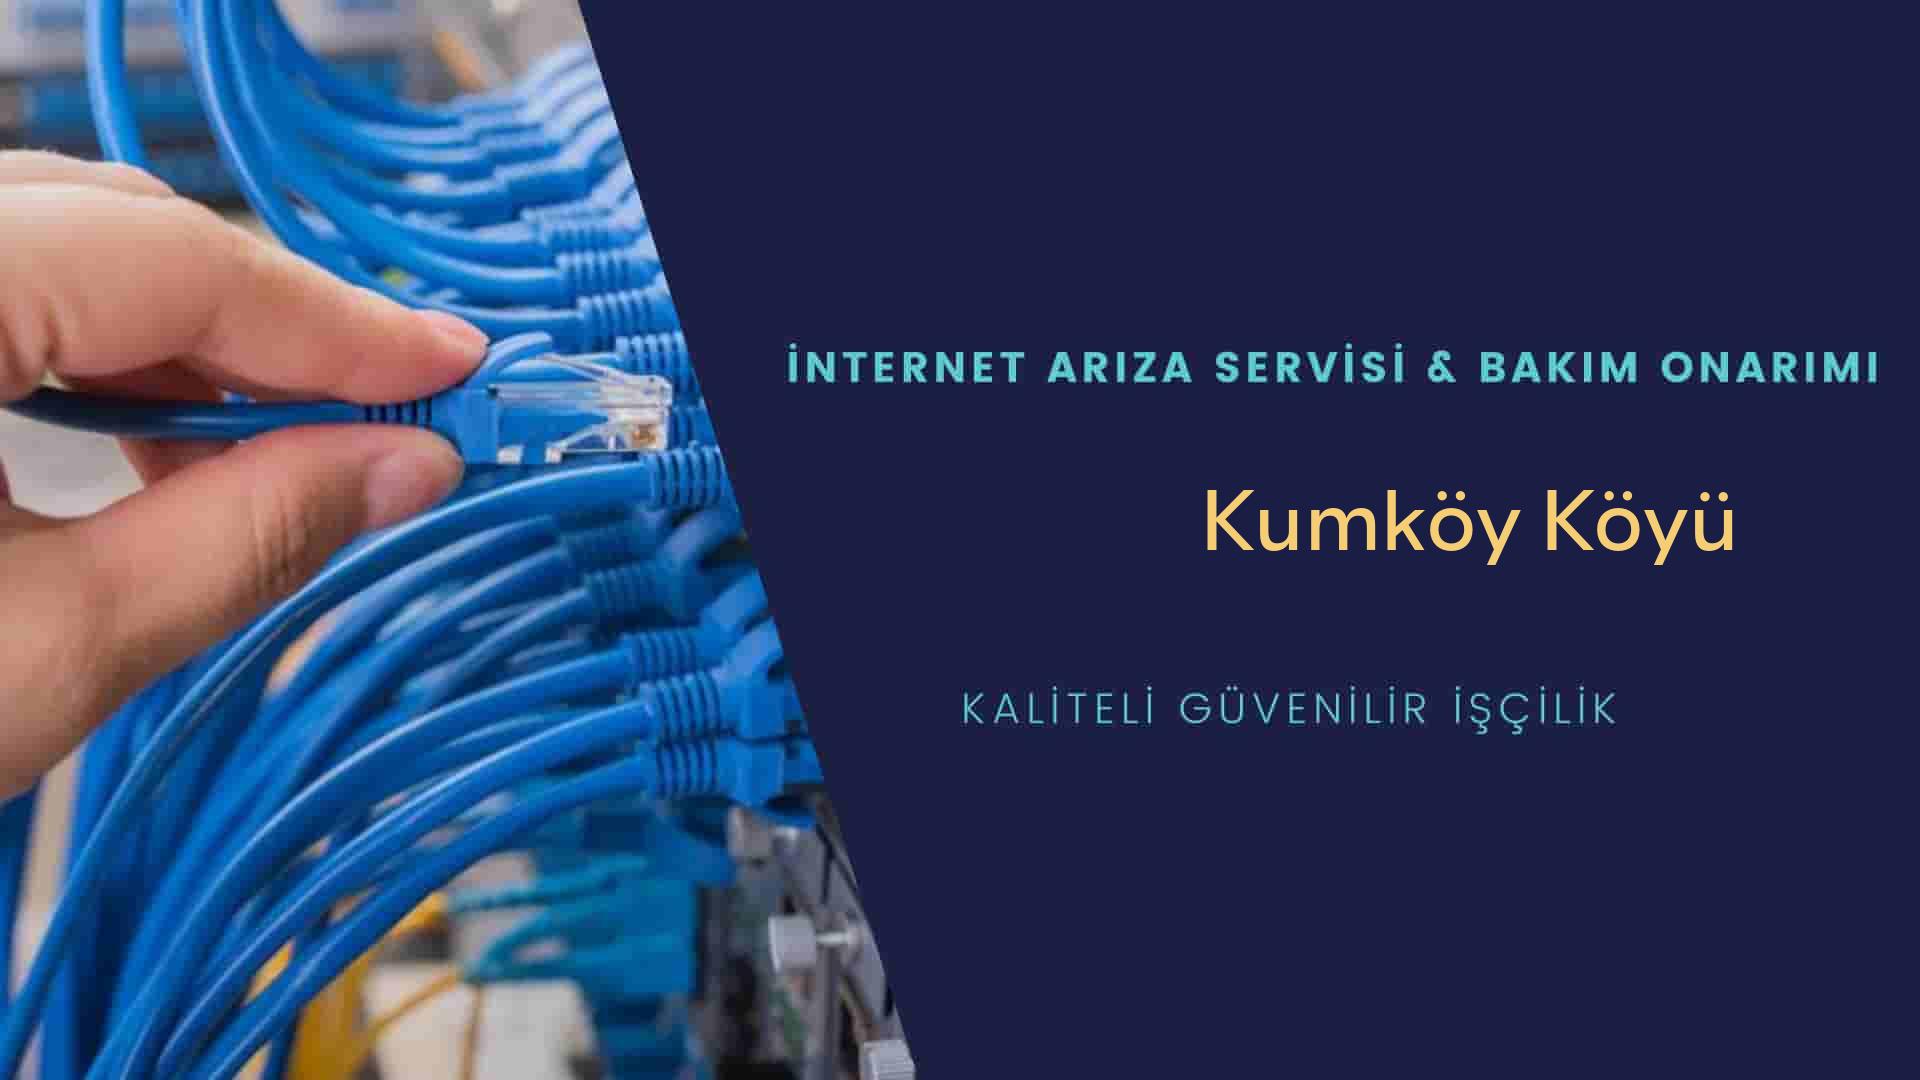 Kumköy Köyü internet kablosu çekimi yapan yerler veya elektrikçiler mi? arıyorsunuz doğru yerdesiniz o zaman sizlere 7/24 yardımcı olacak profesyonel ustalarımız bir telefon kadar yakındır size.